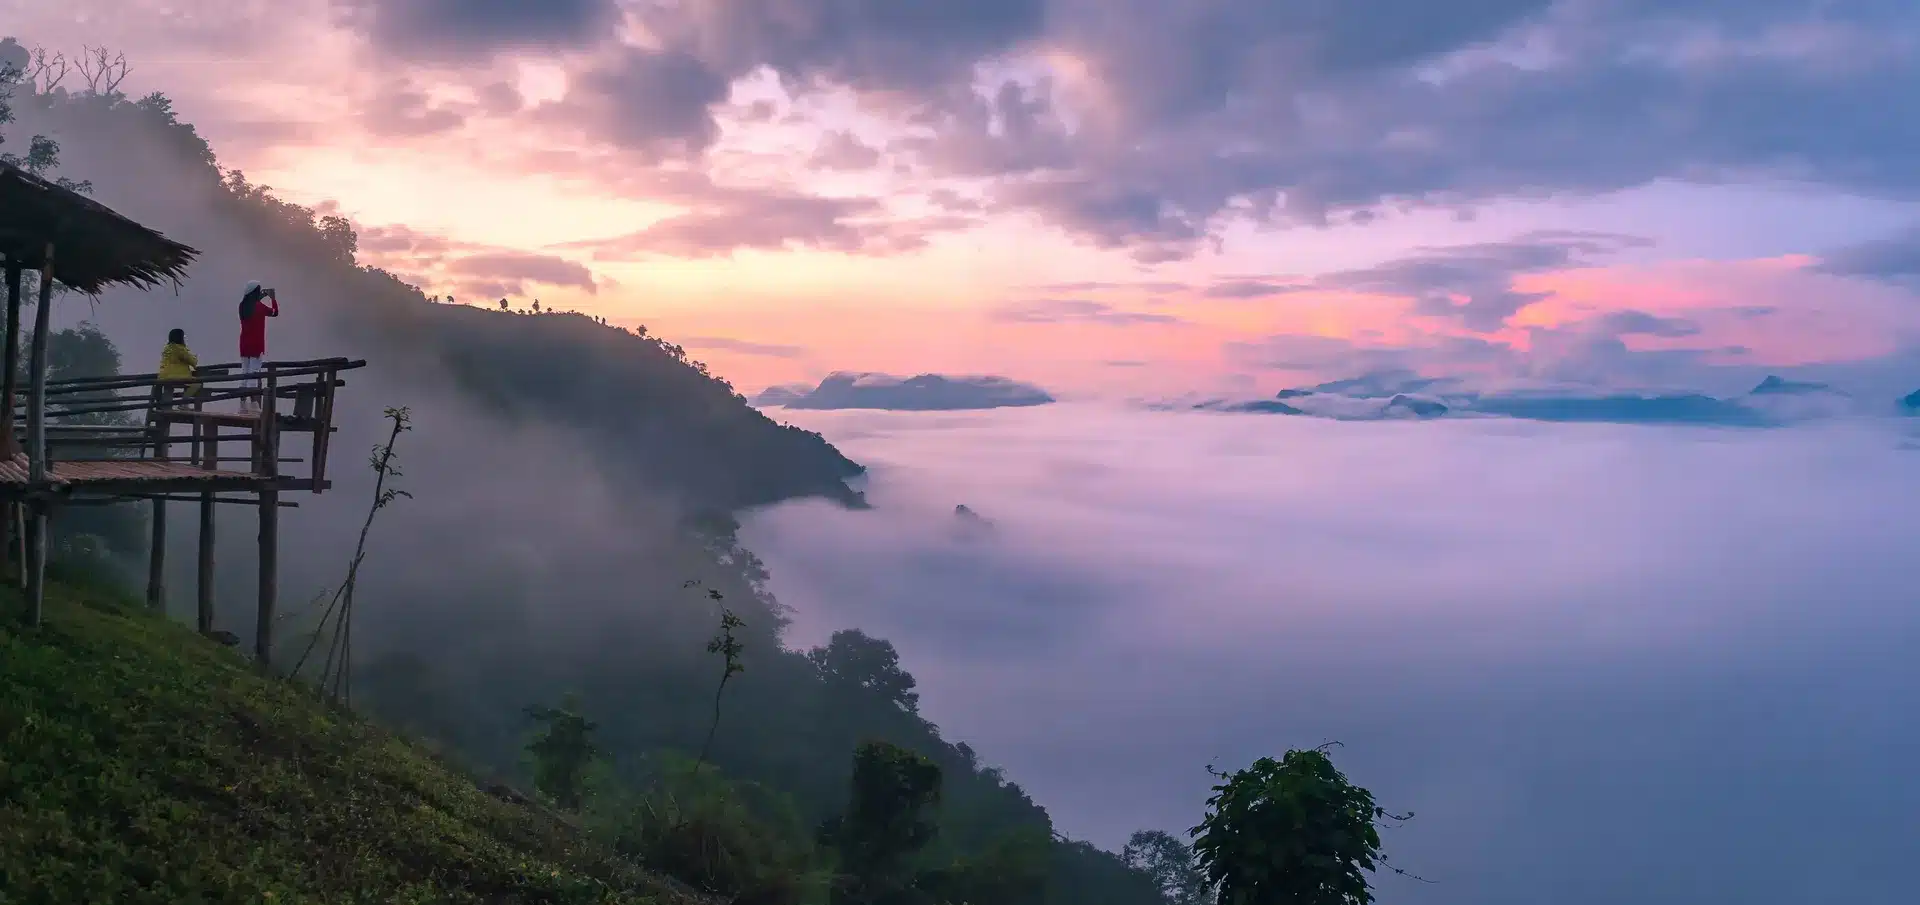 רקע נוף ושמיים, טבע צפון תאילנד, עמקים עמוסי ערפל, מעברי הרים חורפיים של מחוז מיי הונג סון, נוף מלמעלה על הזריחה והשקיעה של ההר